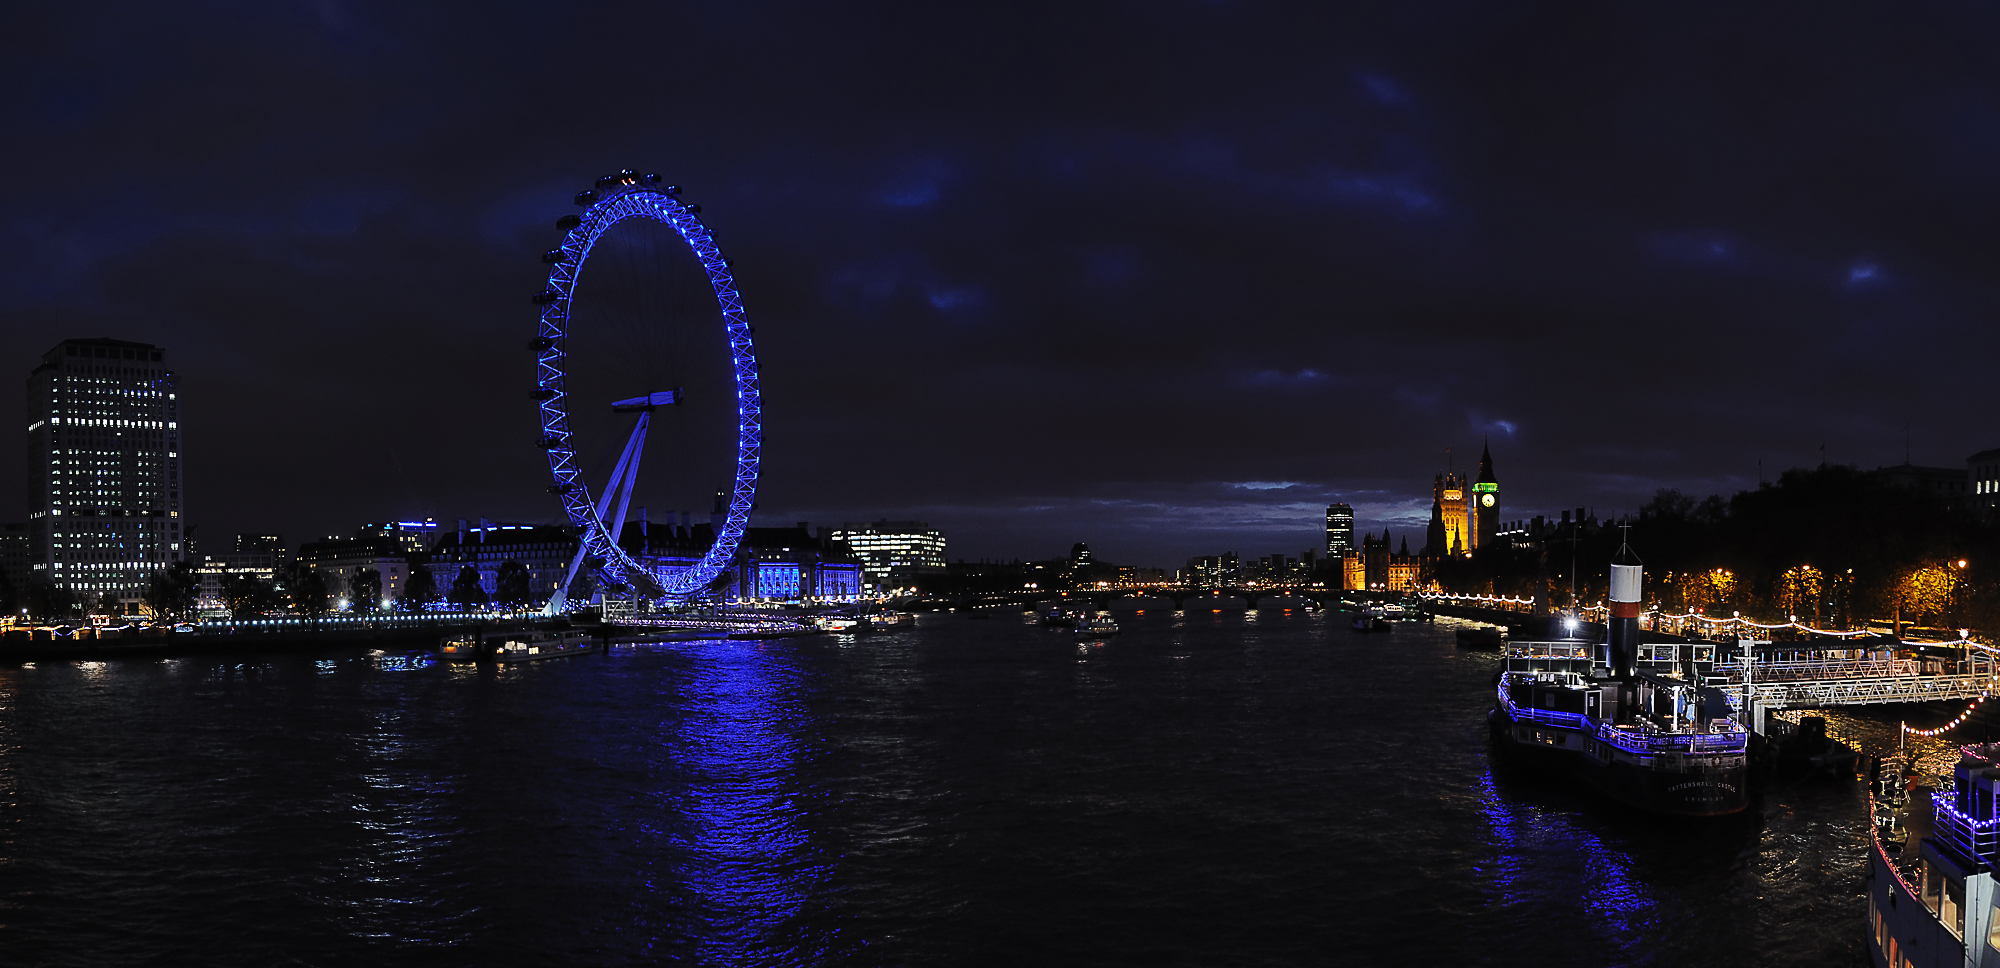 London Panorama